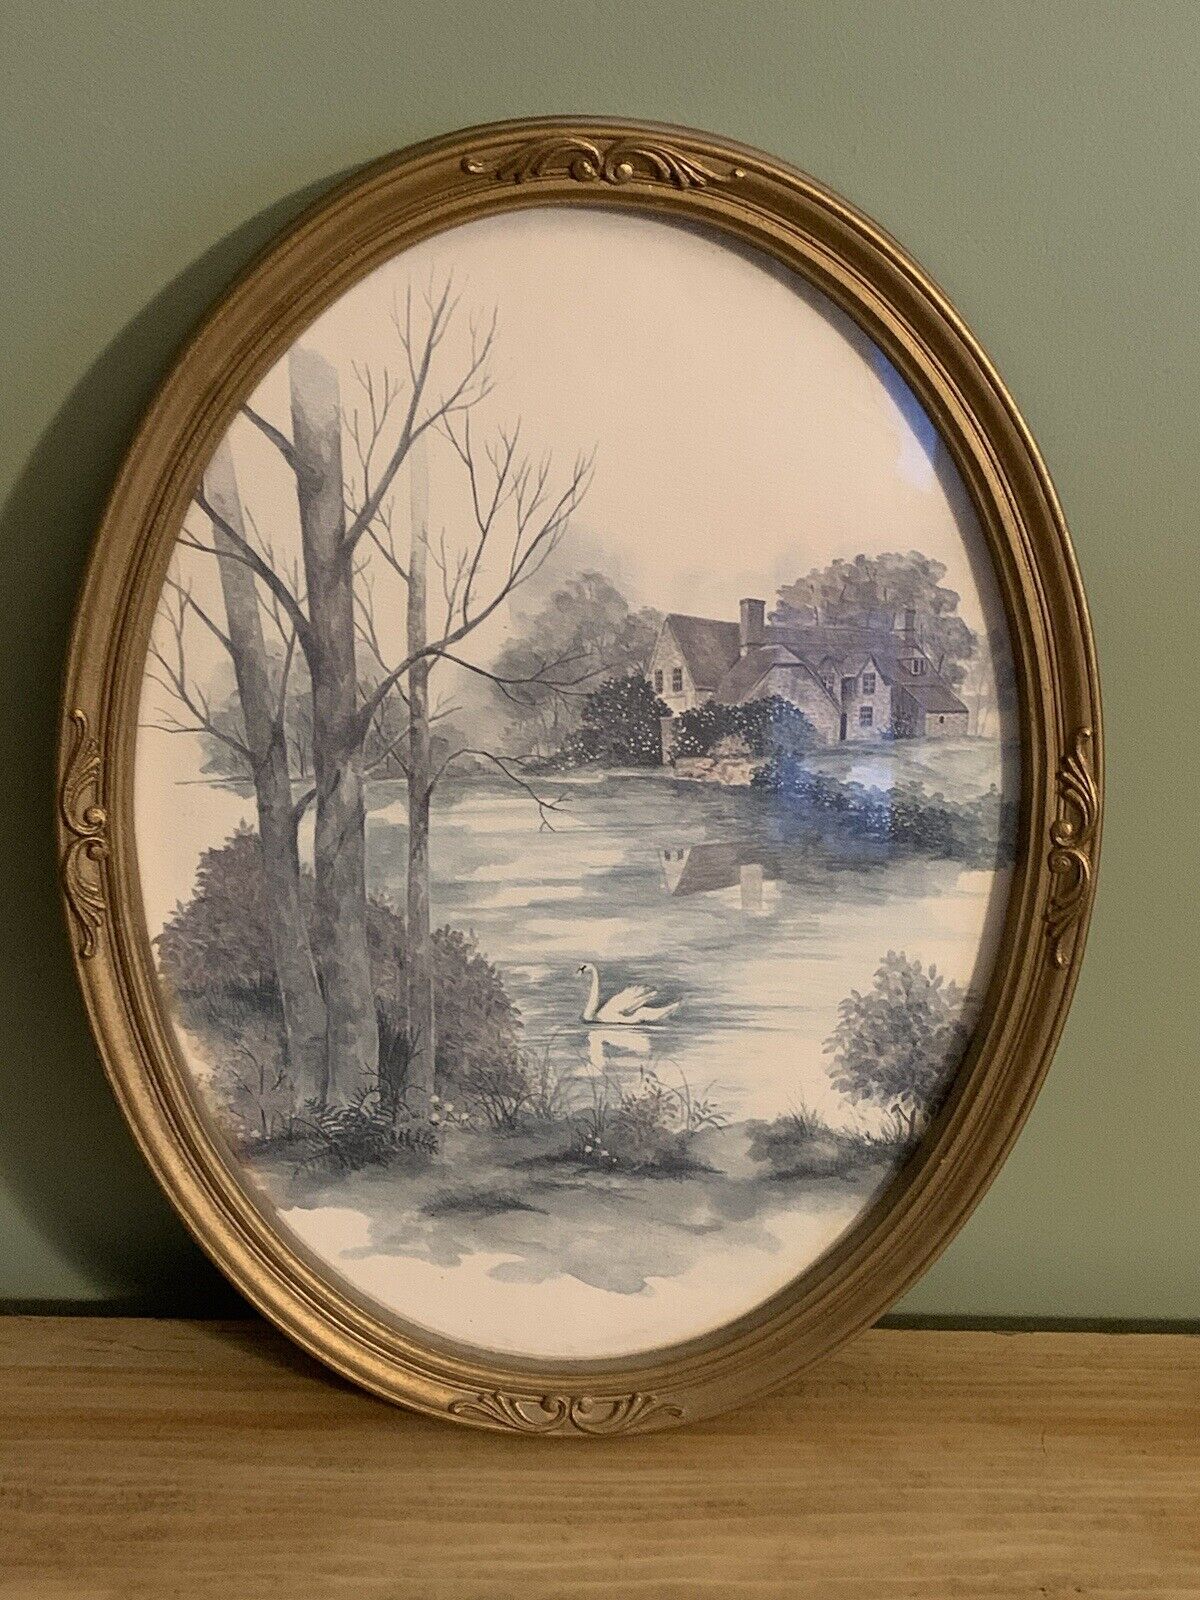 Vintage Oval Ornate Gold Frame by HOMCO Inc. Landscape Swan Lake Scene